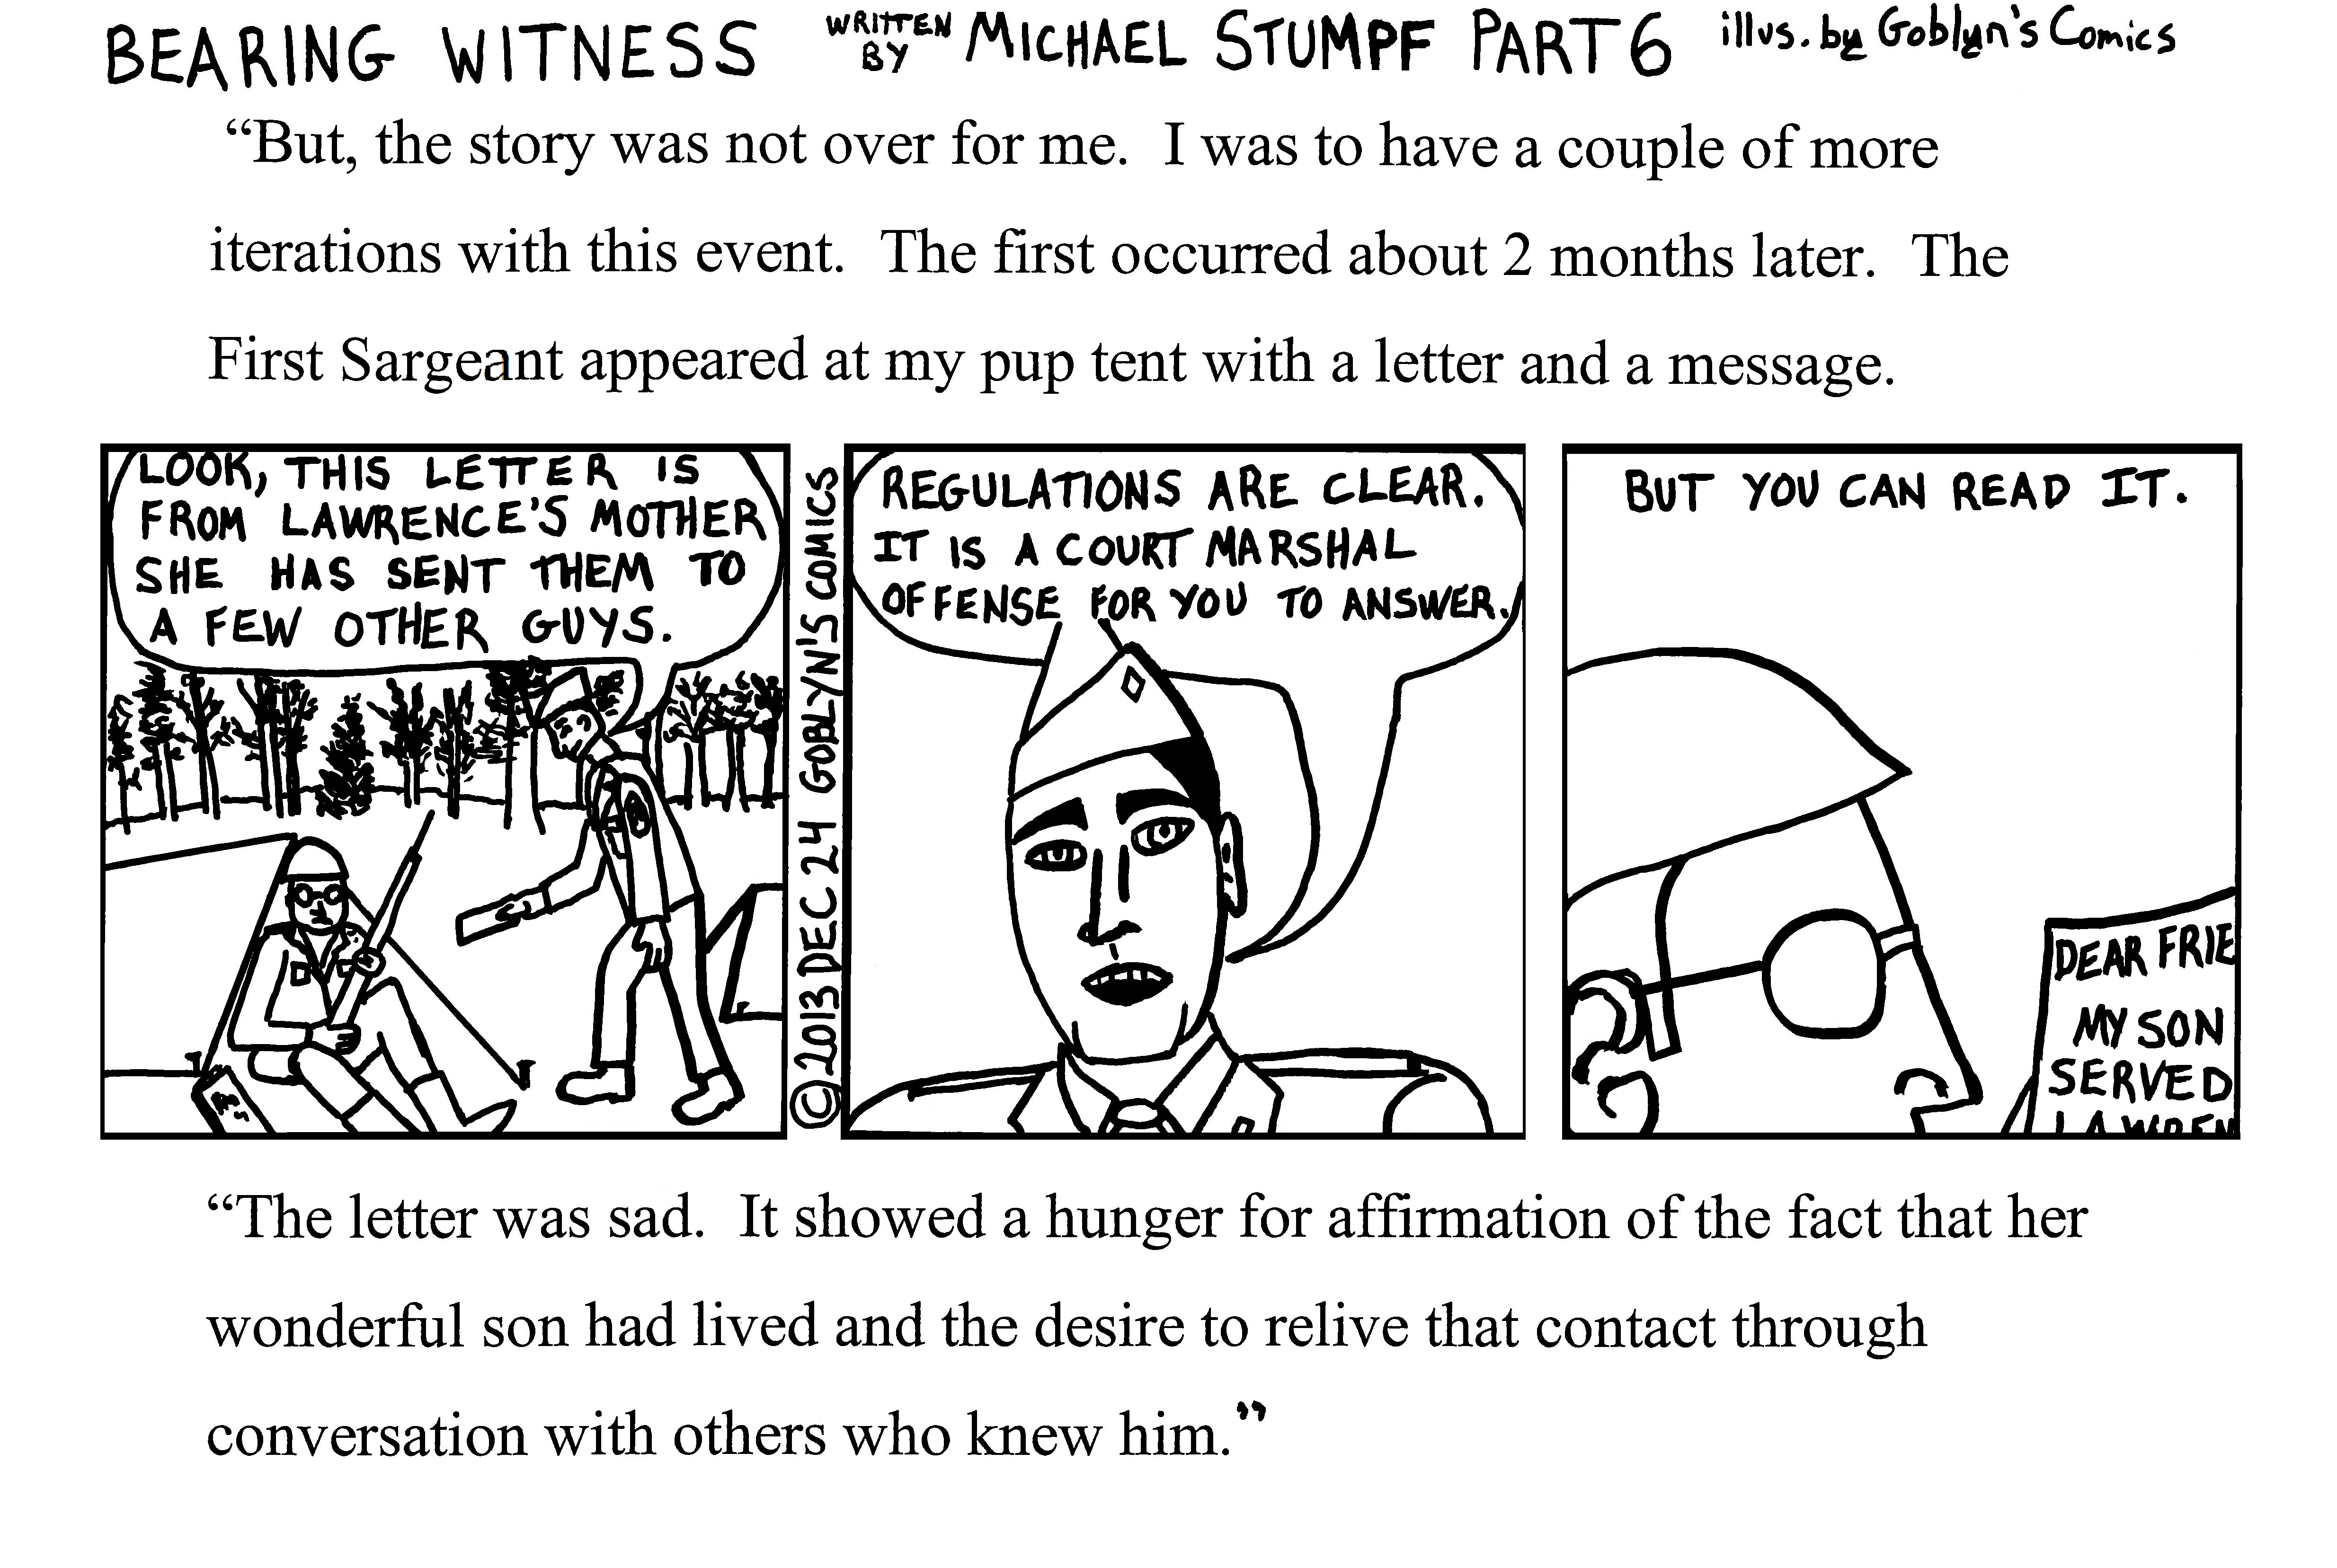 Bearing Witness Part 6 by Michael Stumpf